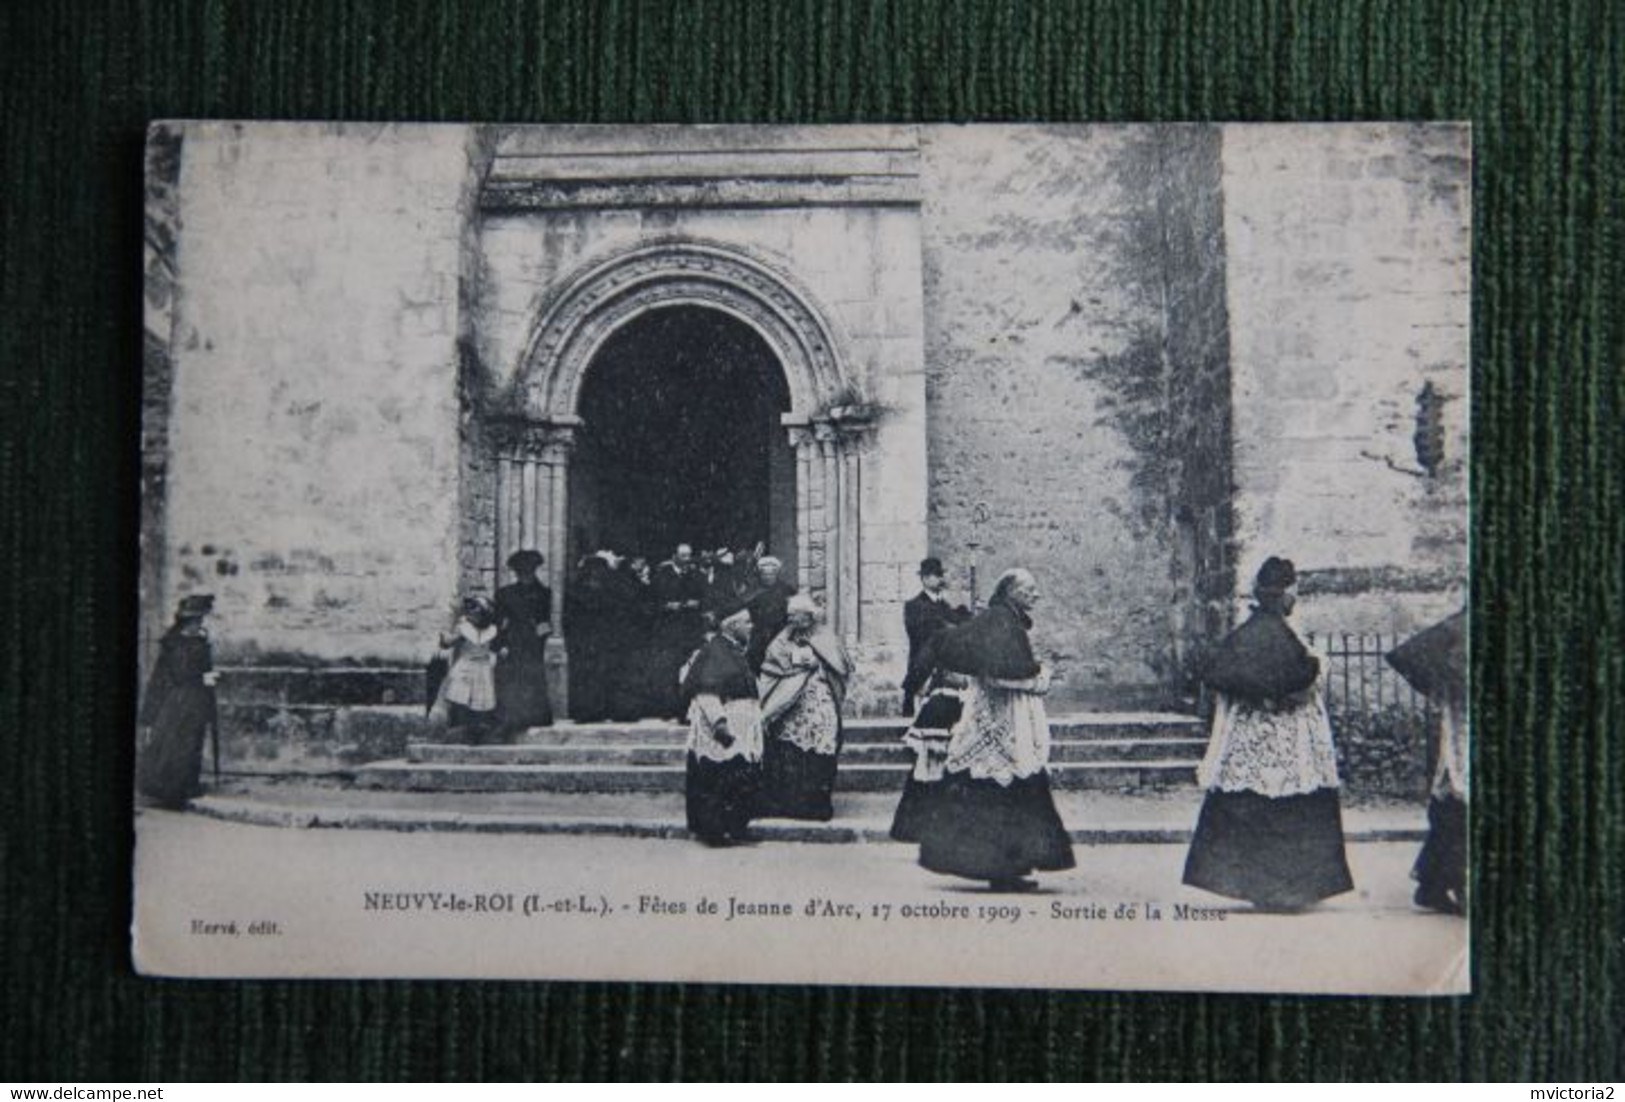 NEUVY LE ROI : Fêtes De Jeanne D'ARC, 17 Octobre 1909, Sortie De La Messe. - Neuvy-le-Roi